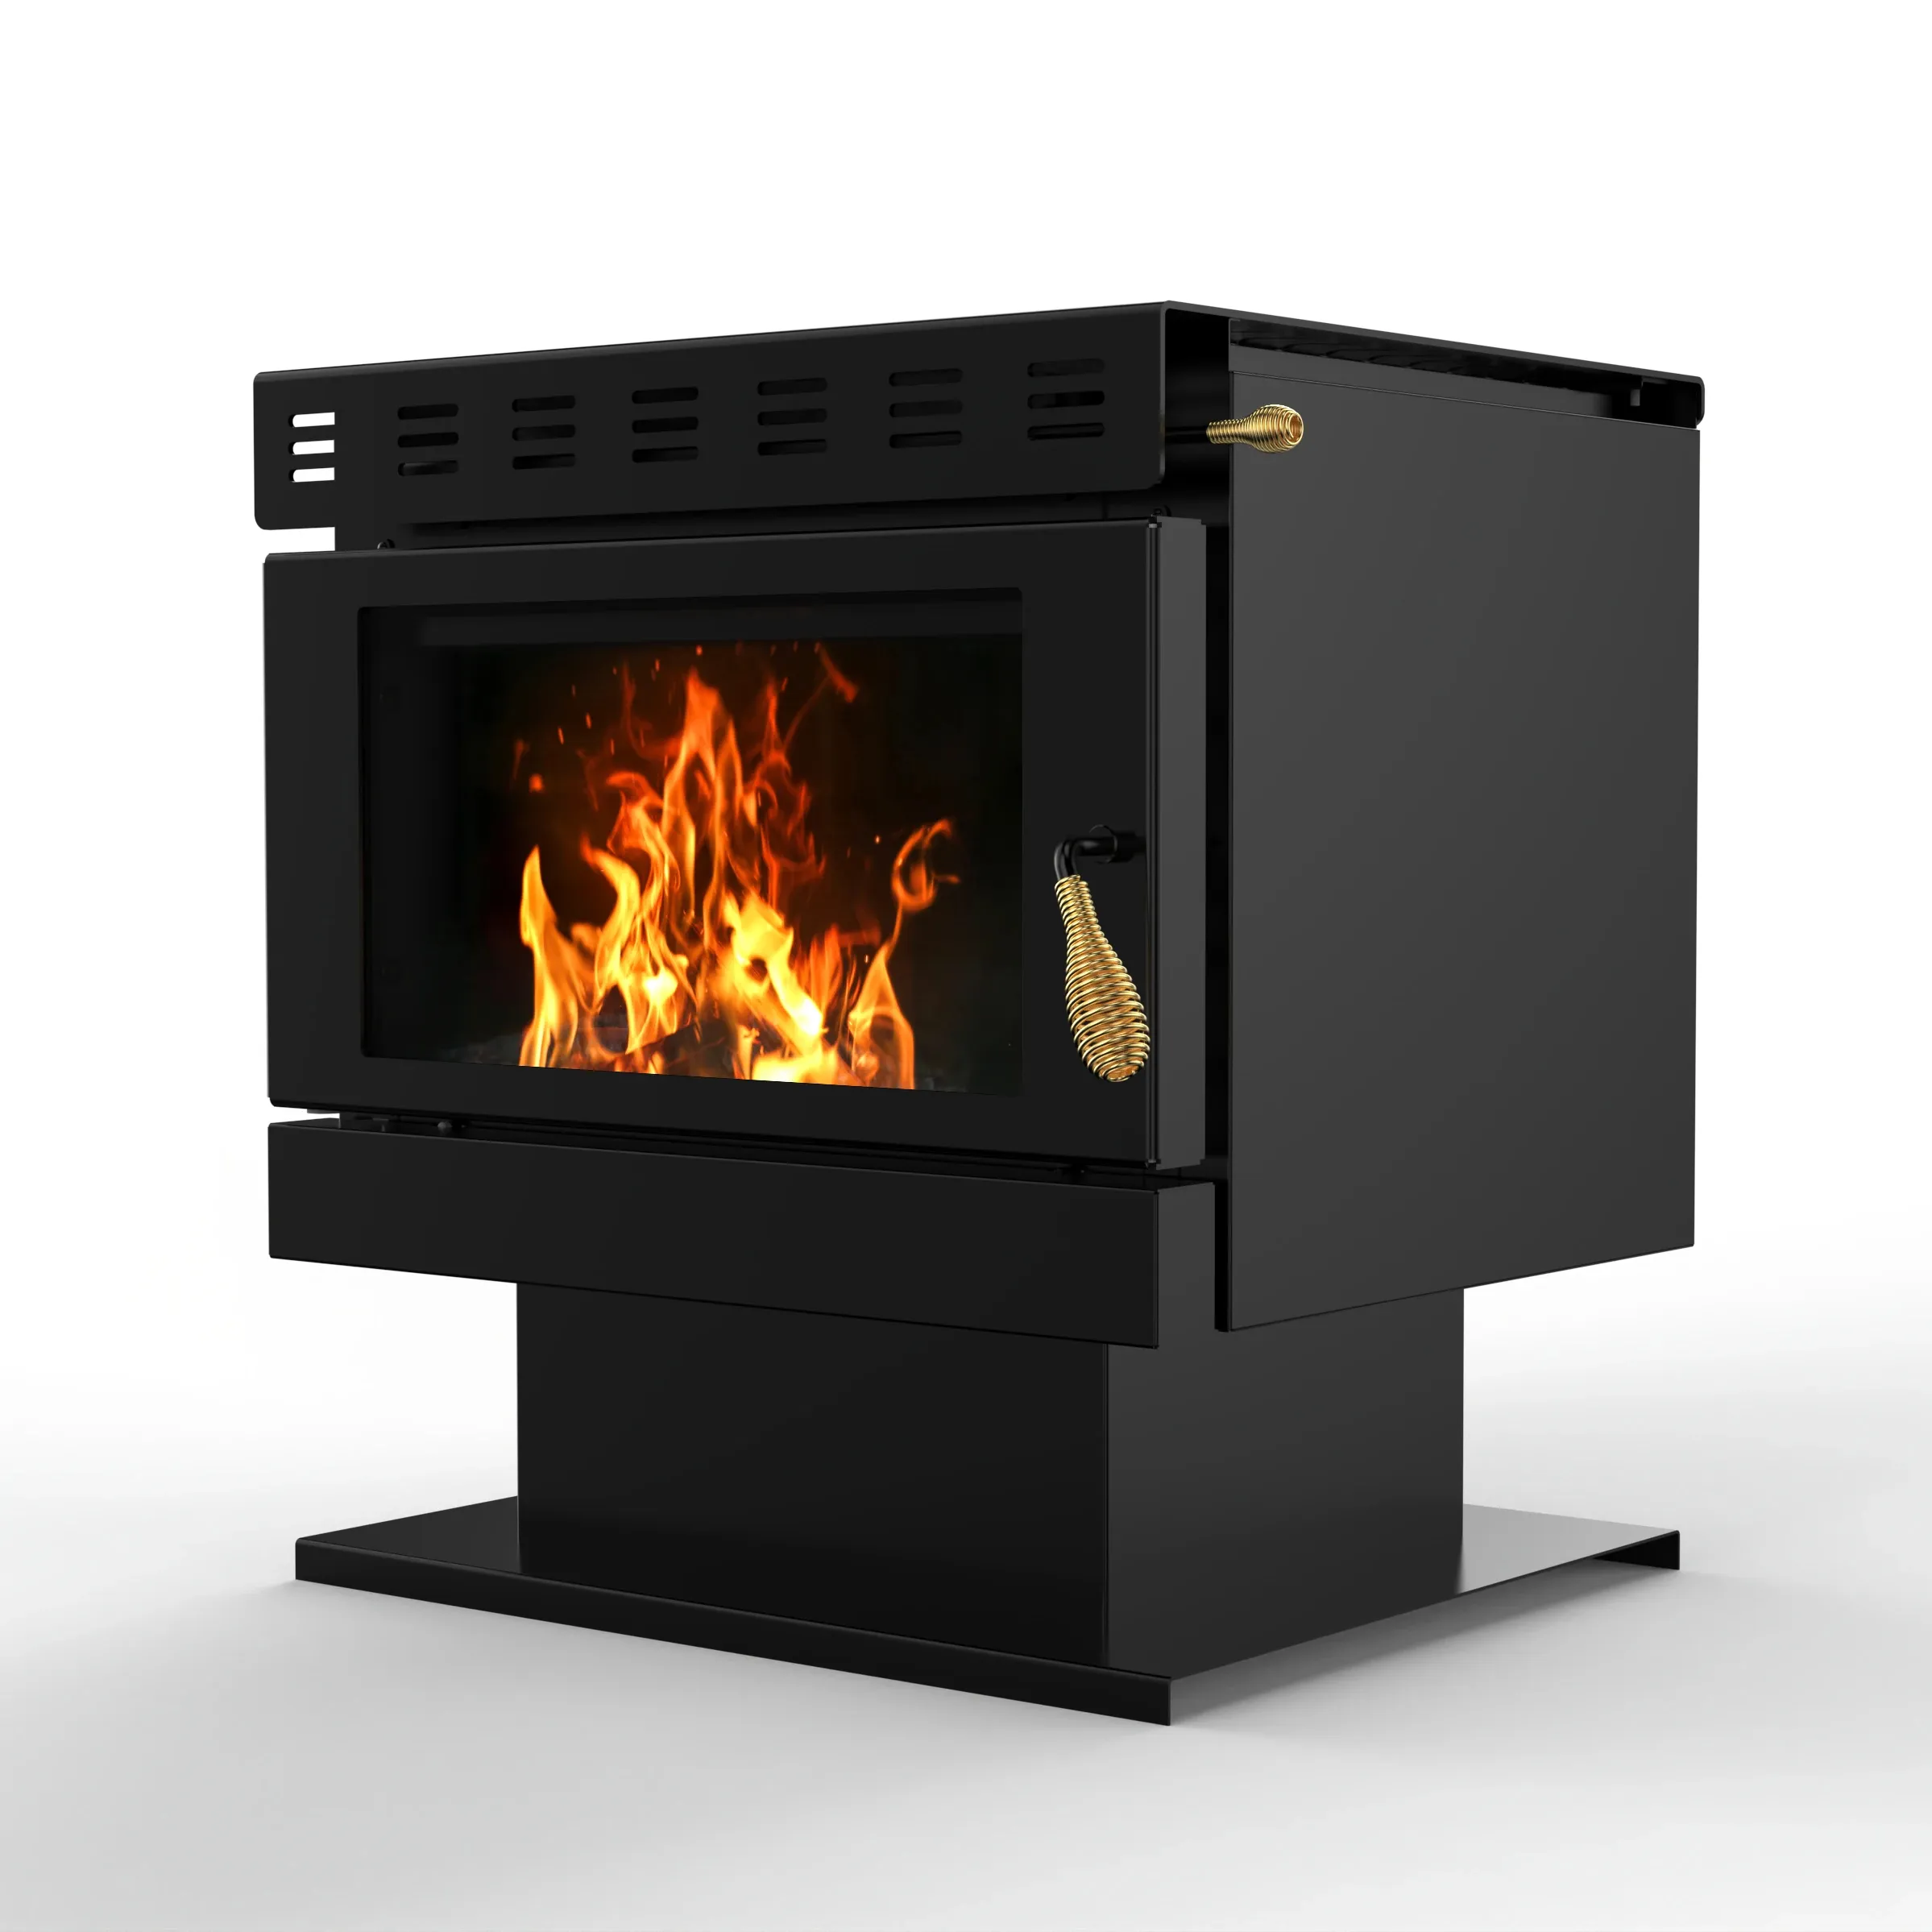 R1201a बेहतर गुणवत्ता मुक्त अमेरिकी शैली बड़े लौ प्रभाव लकड़ी जलाने वाली चिमनी 1290 वर्ग. फीट.